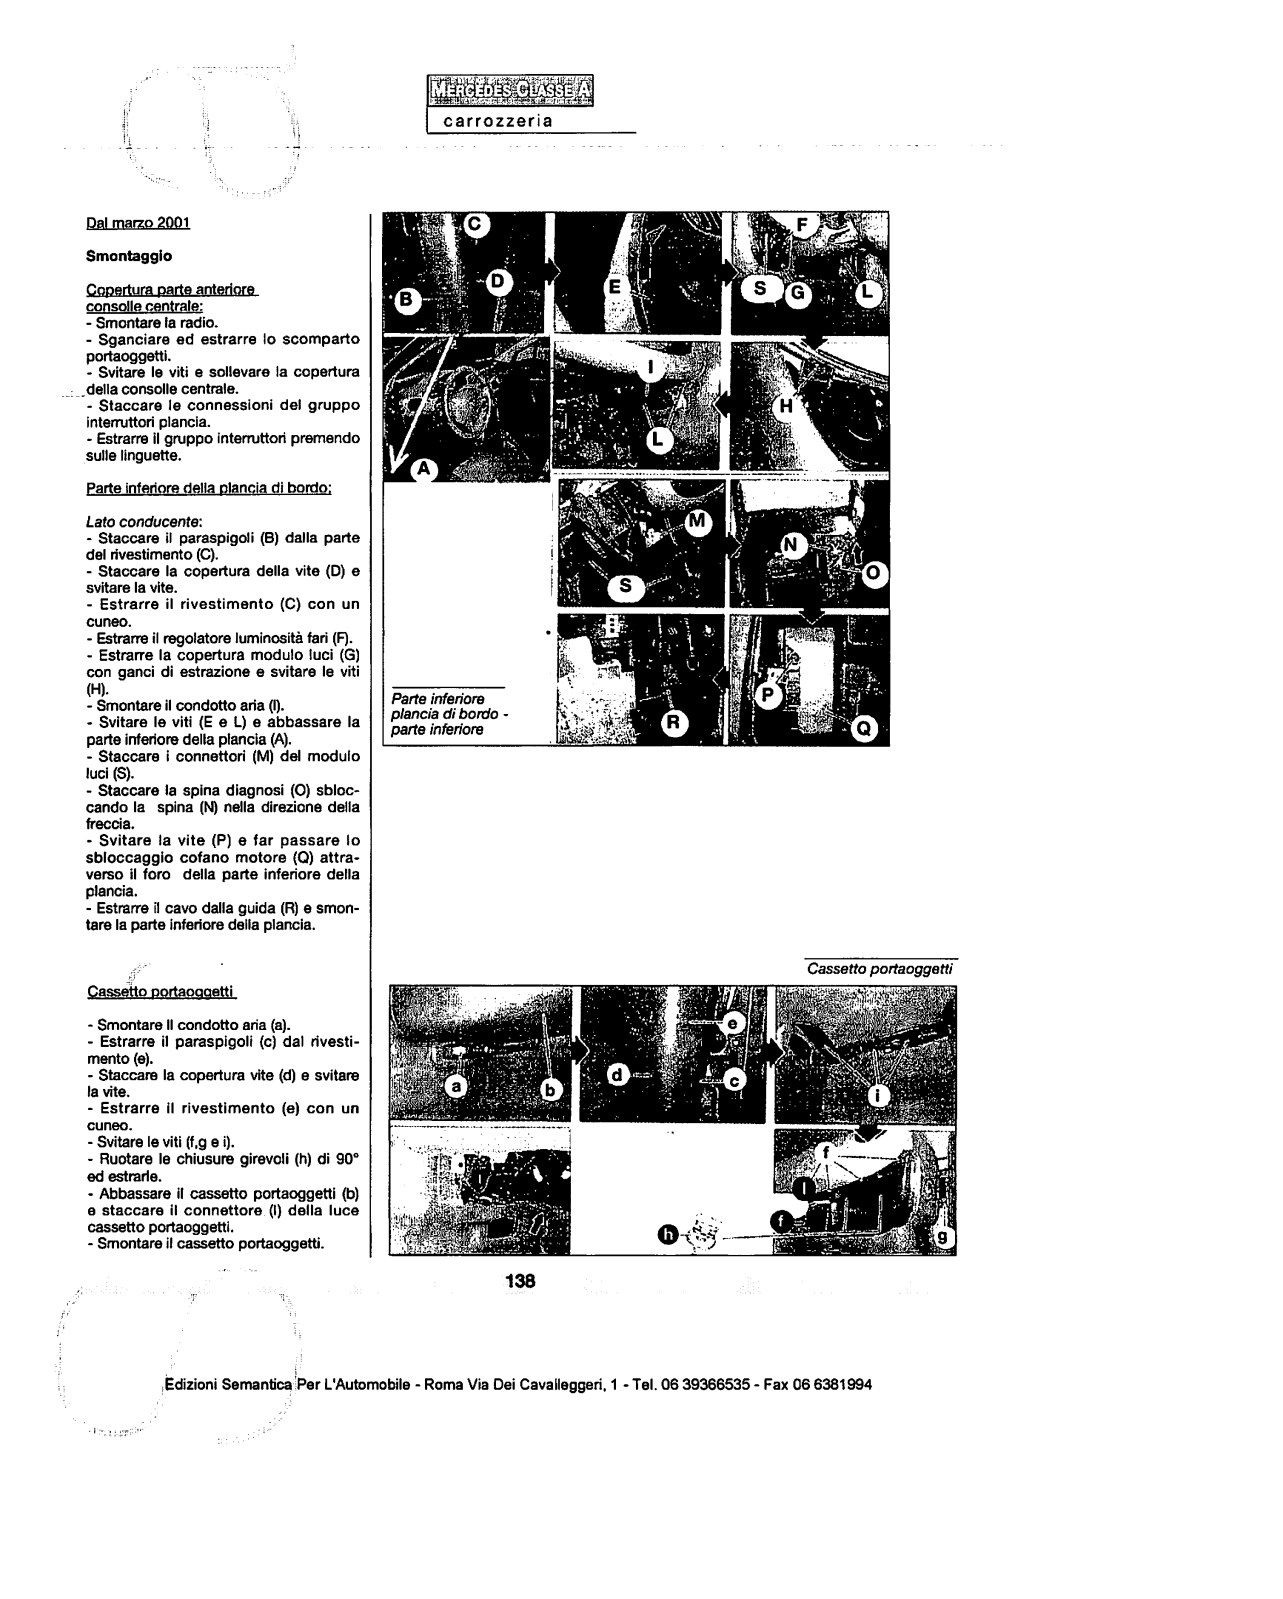 (W168): Manual técnico - tudo sobre - 1997 a 2004 - italiano 2la78d0